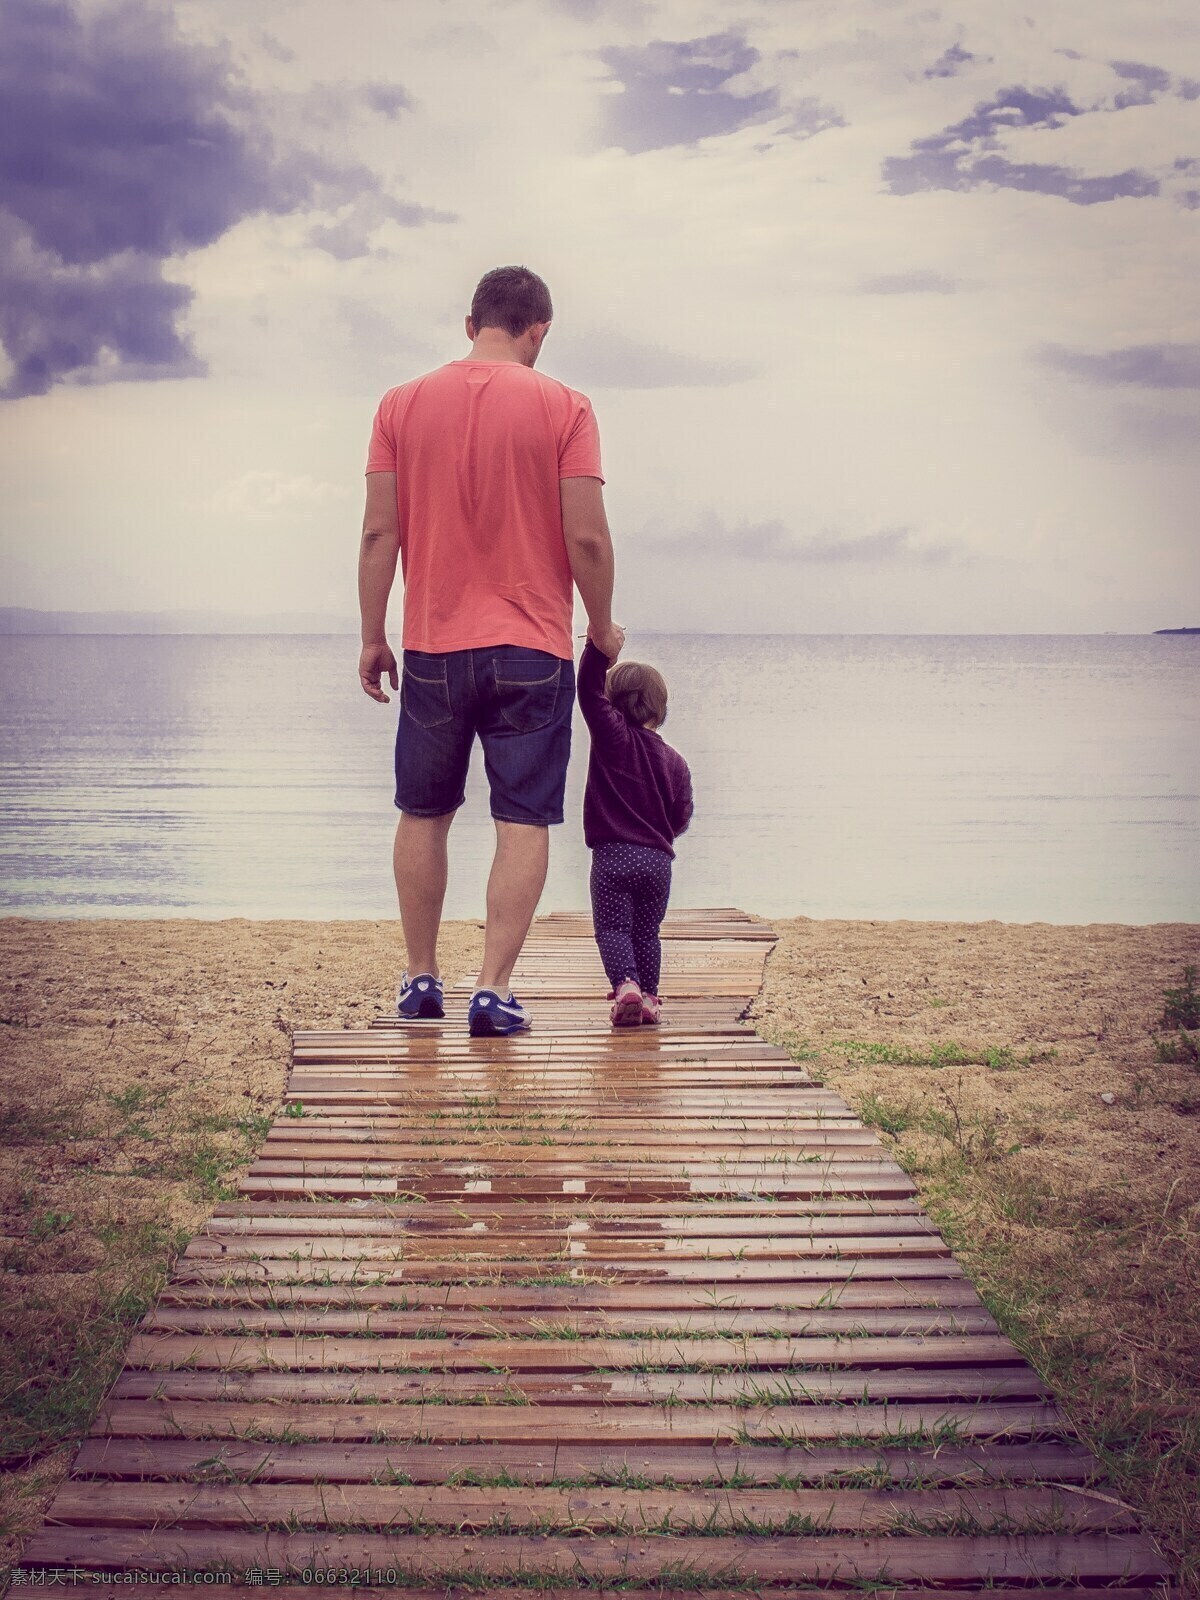 父子漫步海边 父亲节 爱 家庭 幸福 儿童 孩子 父子 牵手 漫步 海边 小路 小孩 幸 亲情 温馨 木板 旅游摄影 国内旅游